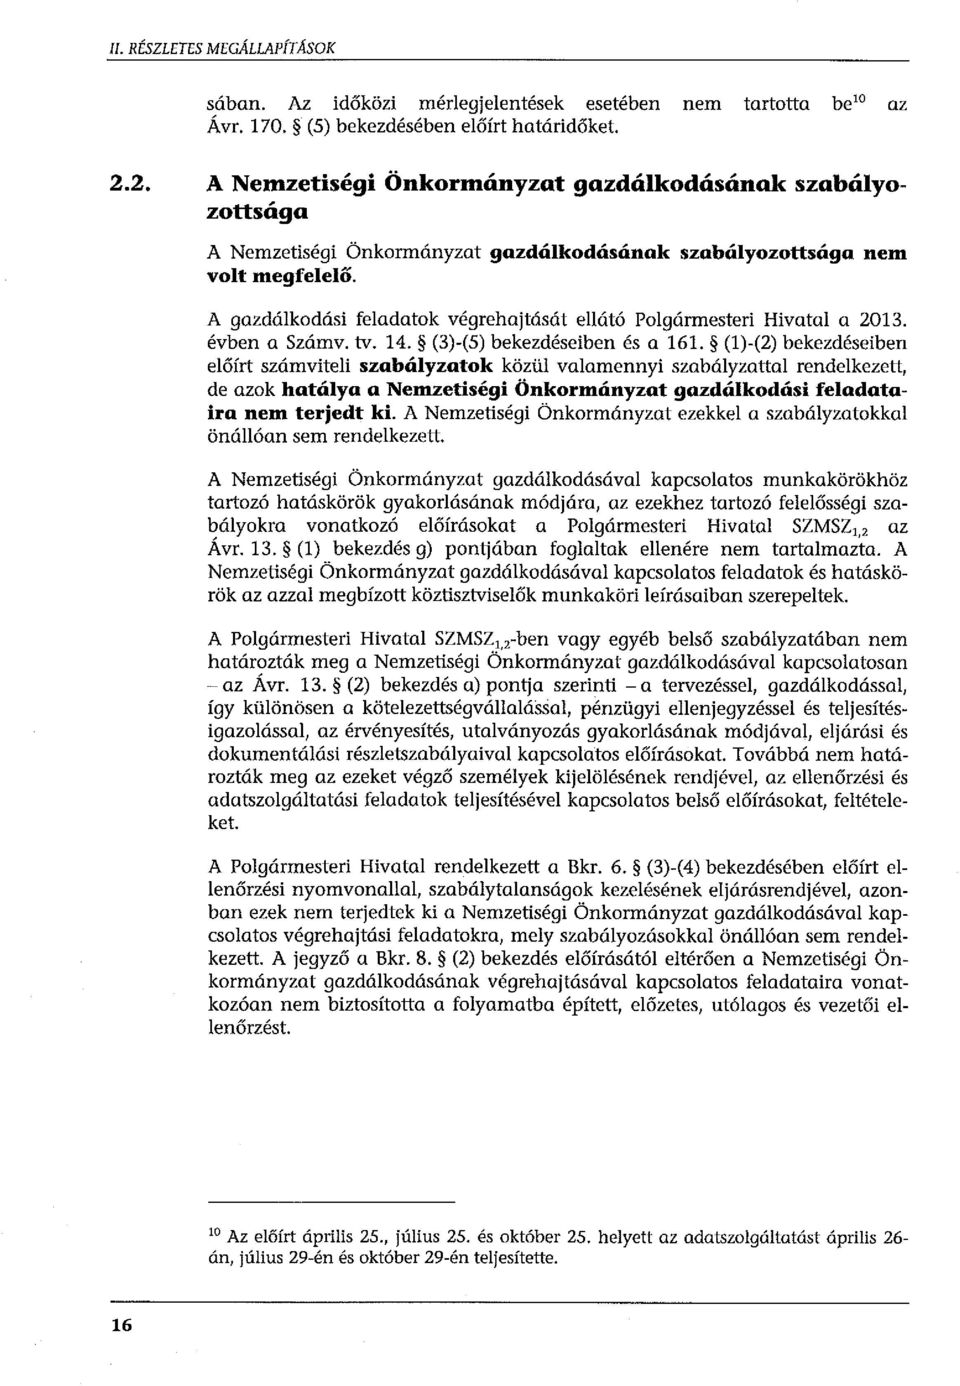 A gazdálkodási feladatok végrehajtását ellátó Polgármesteri Hivatal a 2013. évben a Számv. tv. 14. (3)-(5) bekezdéseiben és a 161.